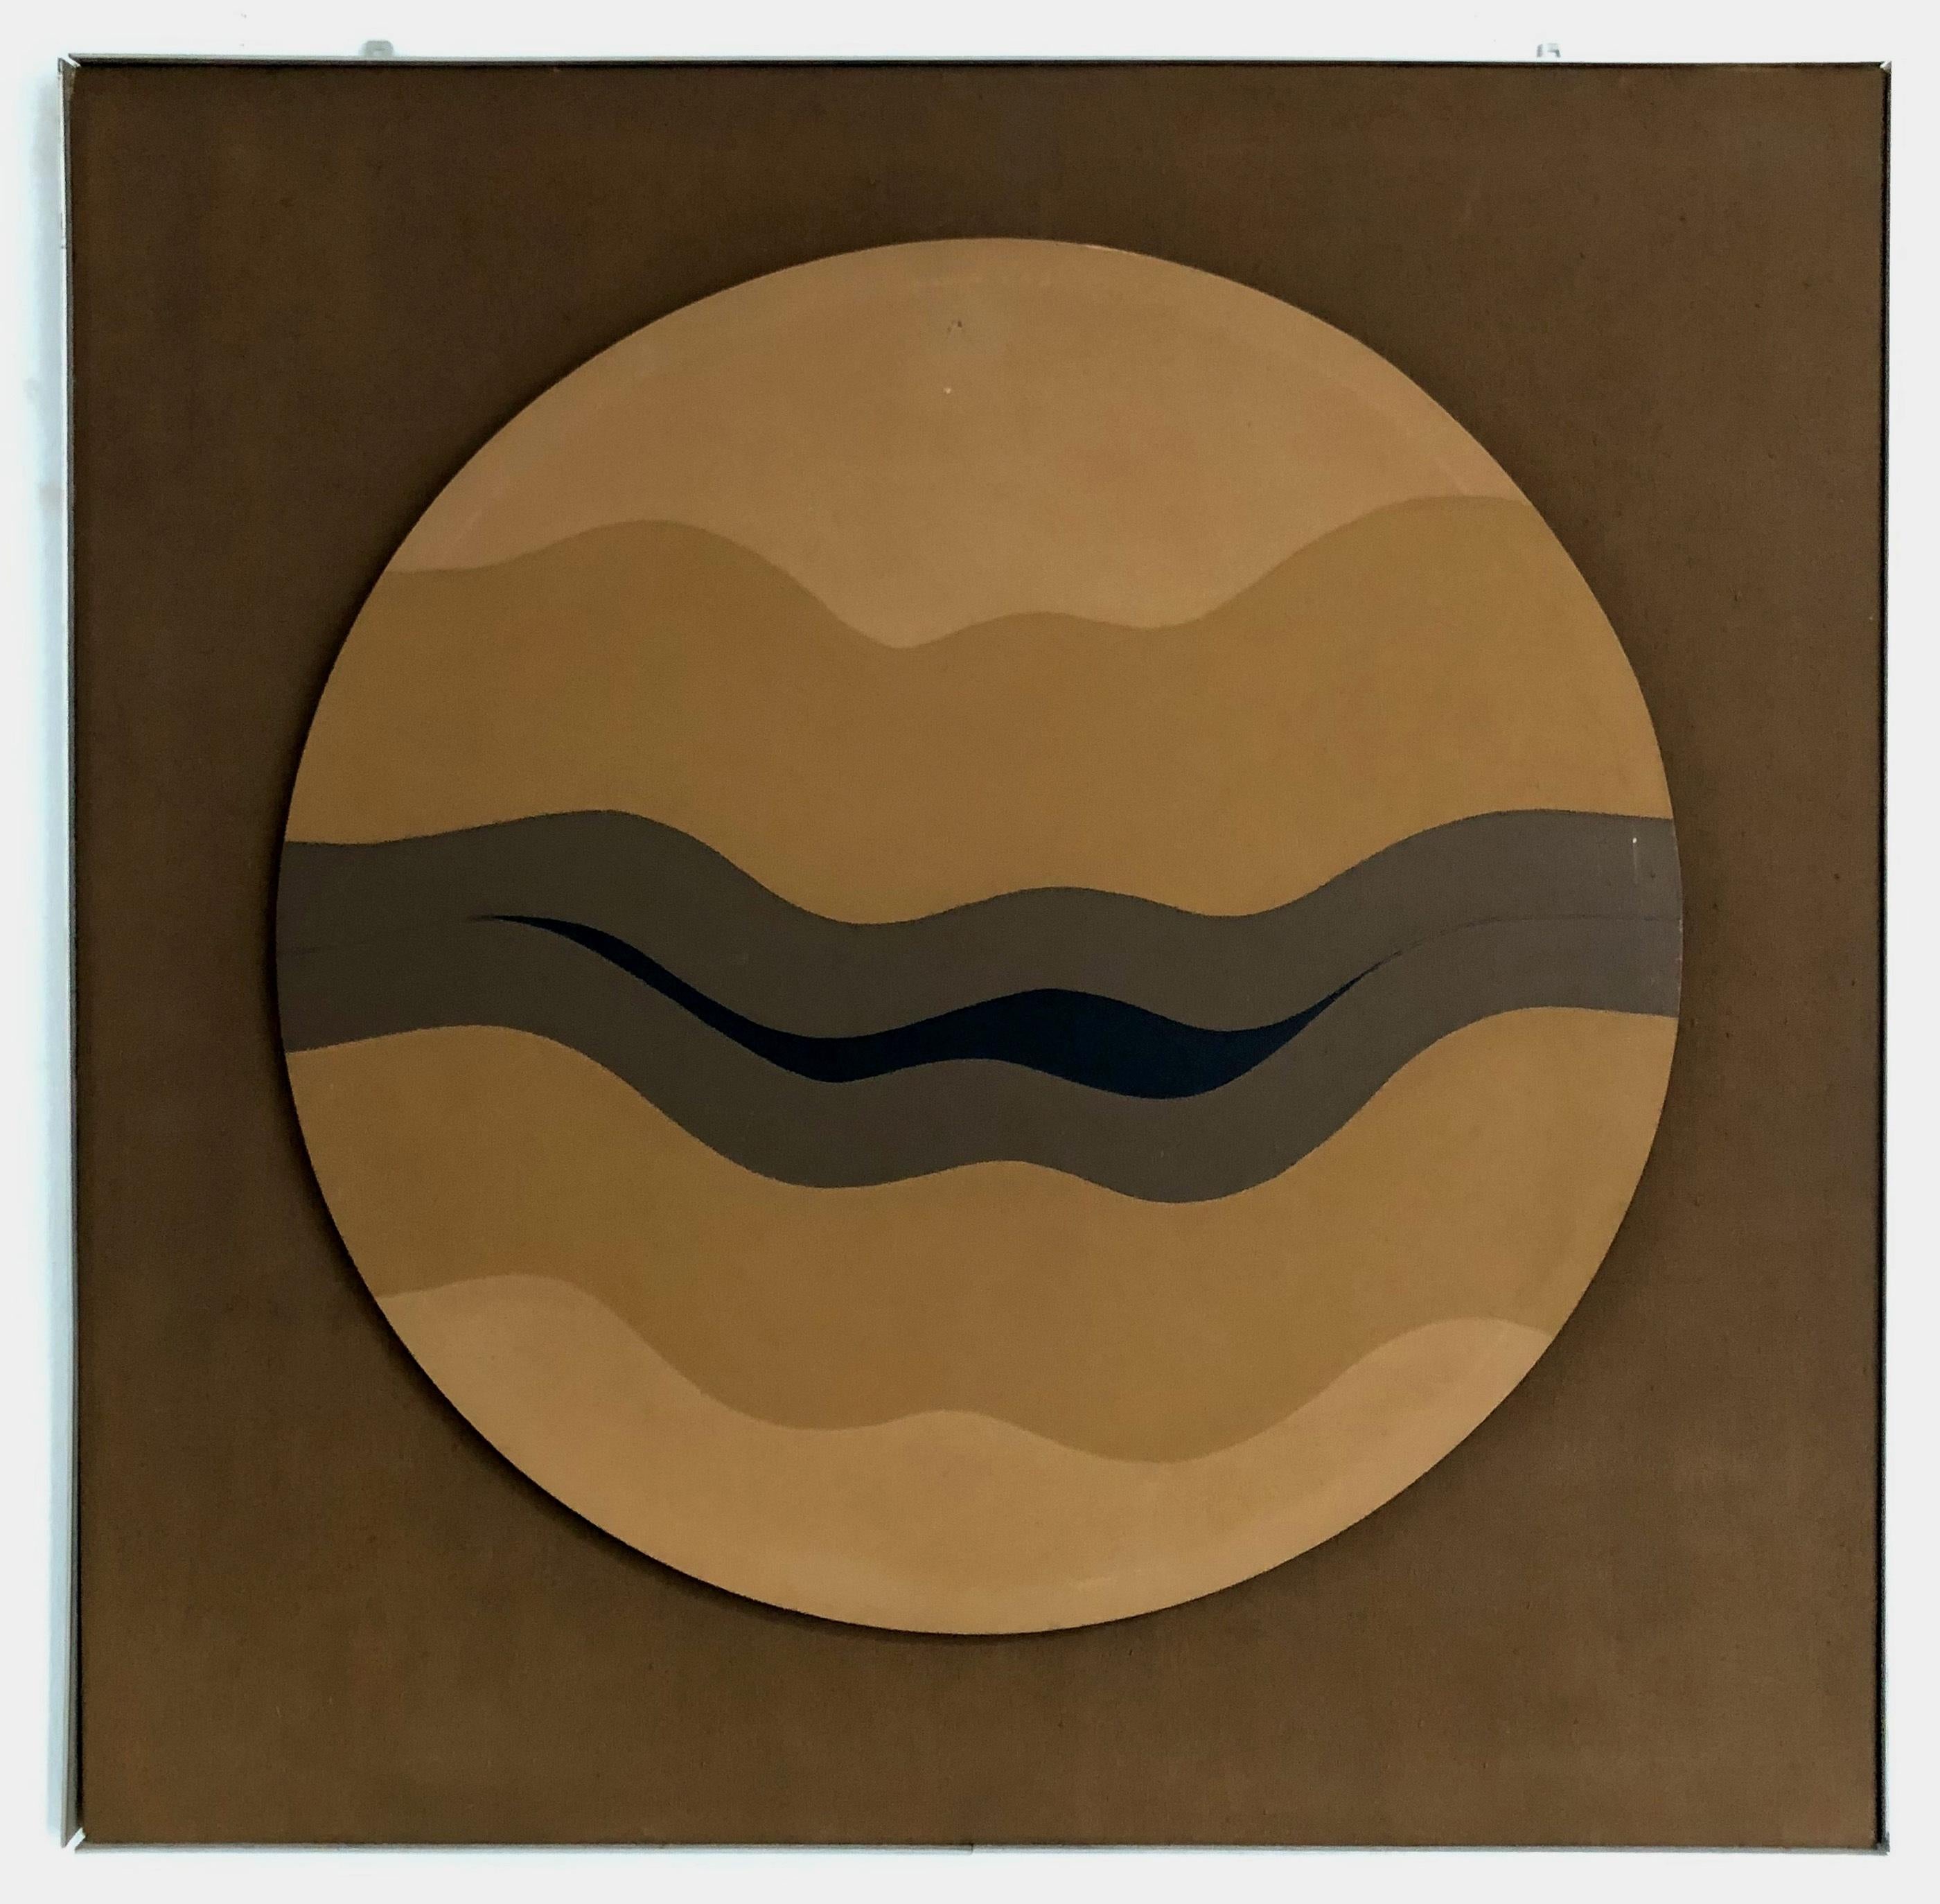 Abstract Painting Hannes Grosse - Wave Form II (Wellenform) (Carré, Rond, Ondulé, Moderne, Mid-Century) (40% DE RÉDUCTION)